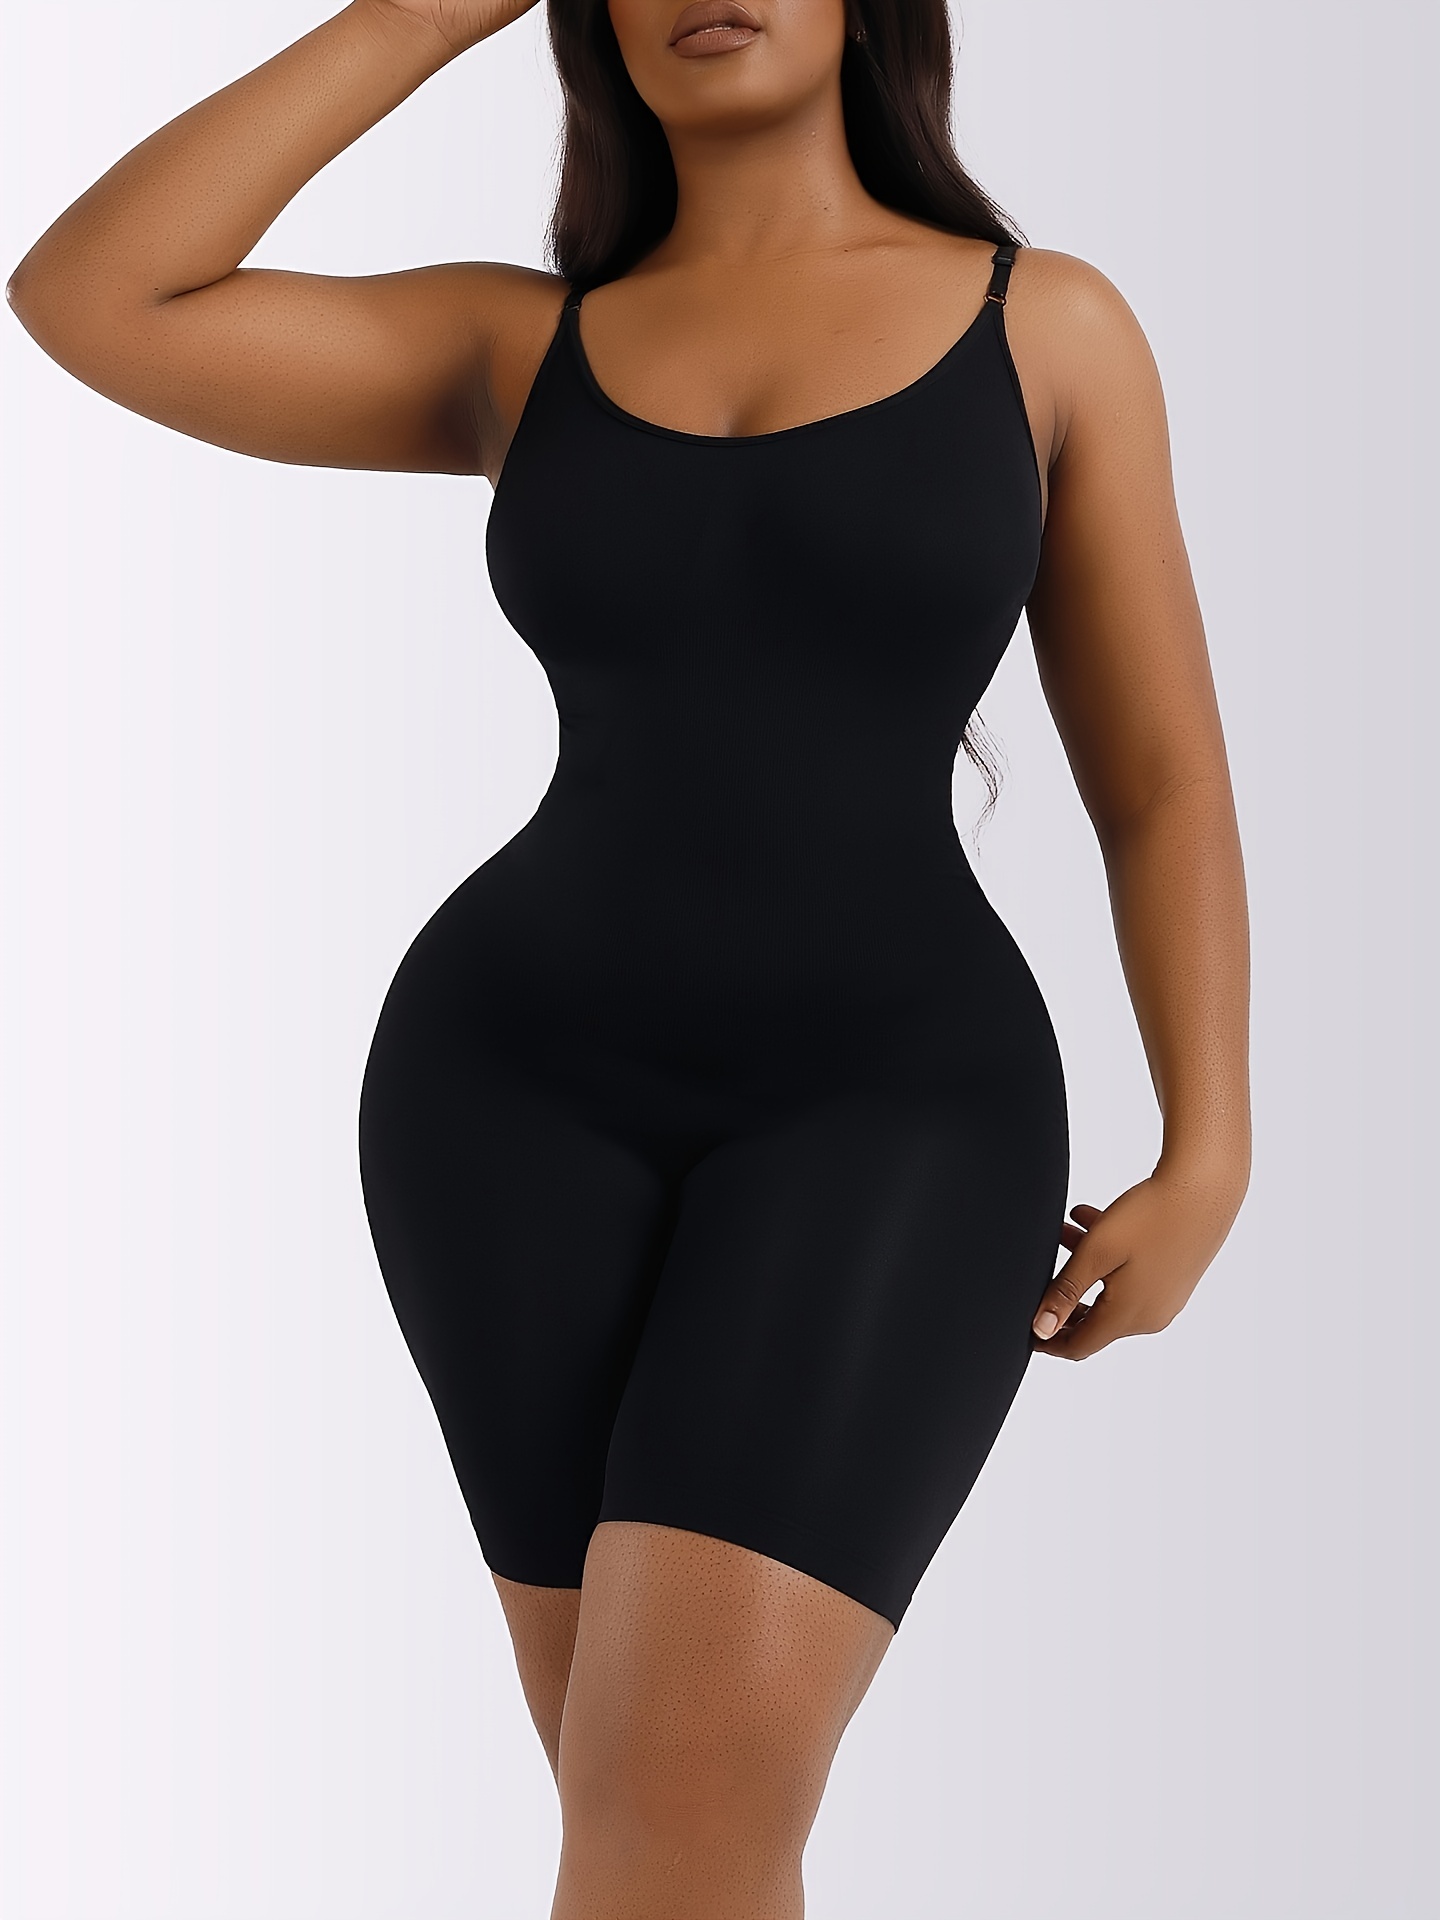 Loday Body Shaper for Women Tummy Control Shapewear Bodysuit Waist Trainer  Faja One Piece Built-In Bra Jumpsuit Tops(Black, S)